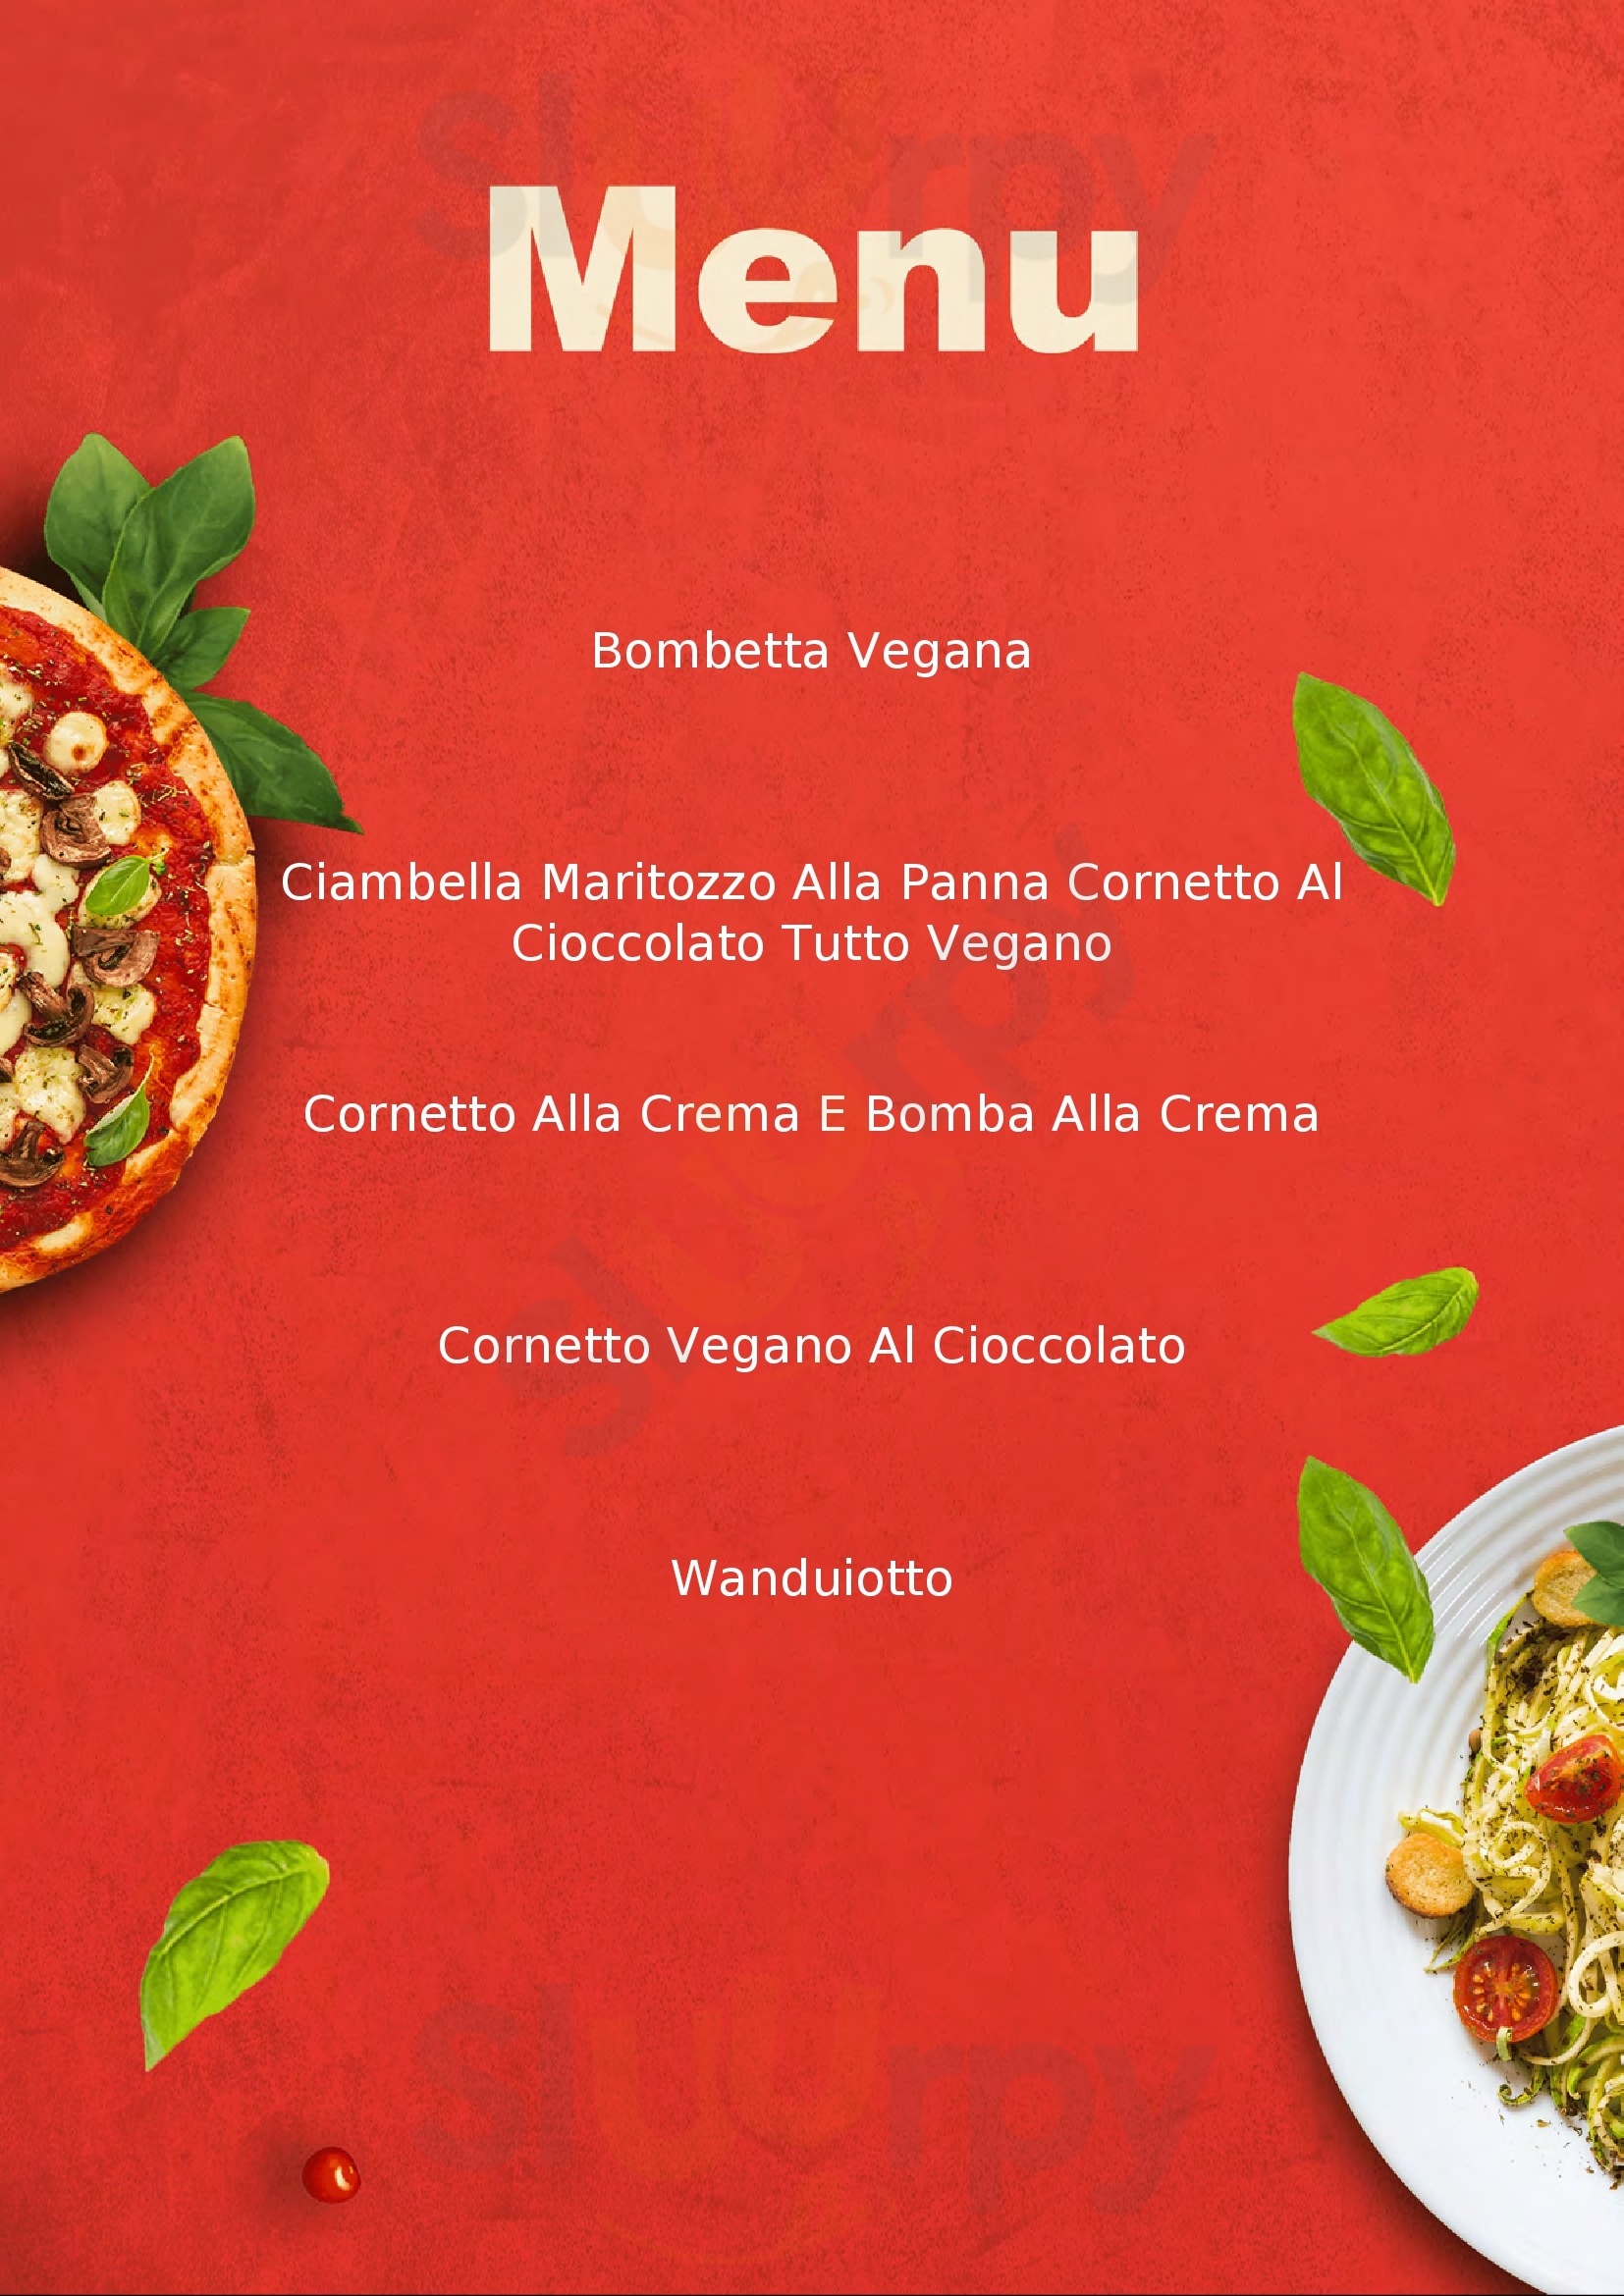 Wani Vegan Bakery Roma menù 1 pagina